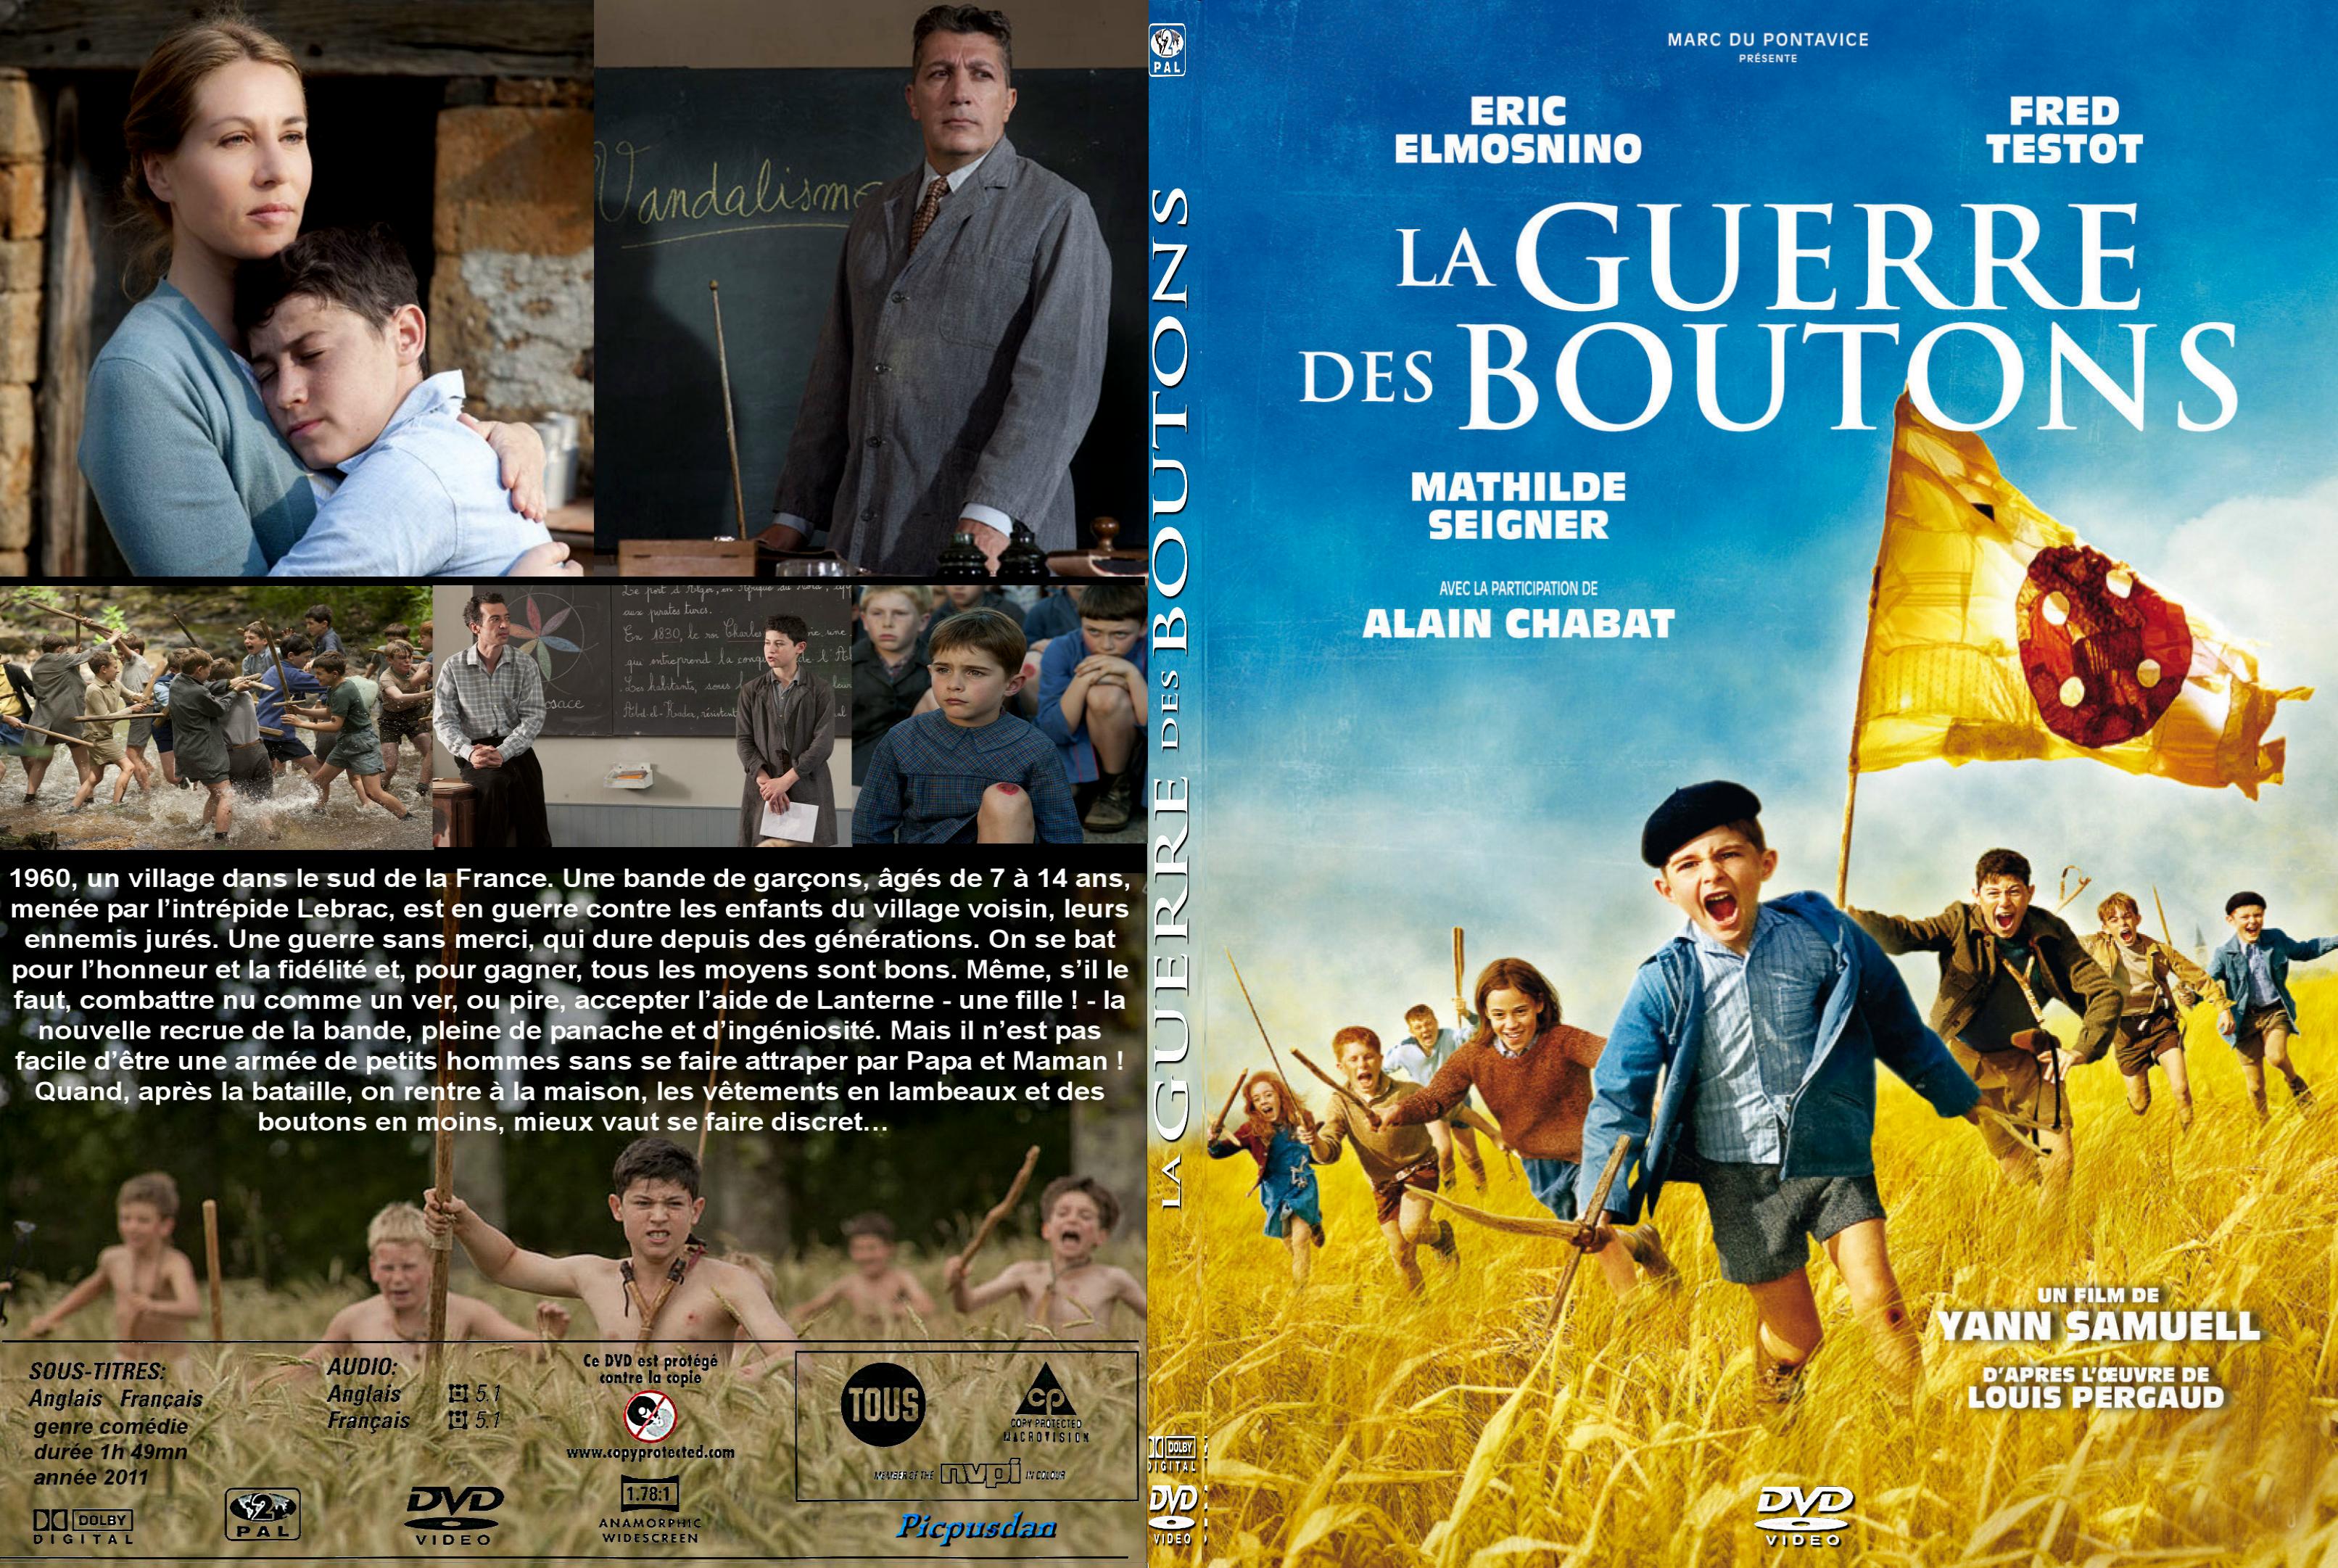 Jaquette DVD La guerre des boutons (2011) custom - SLIM